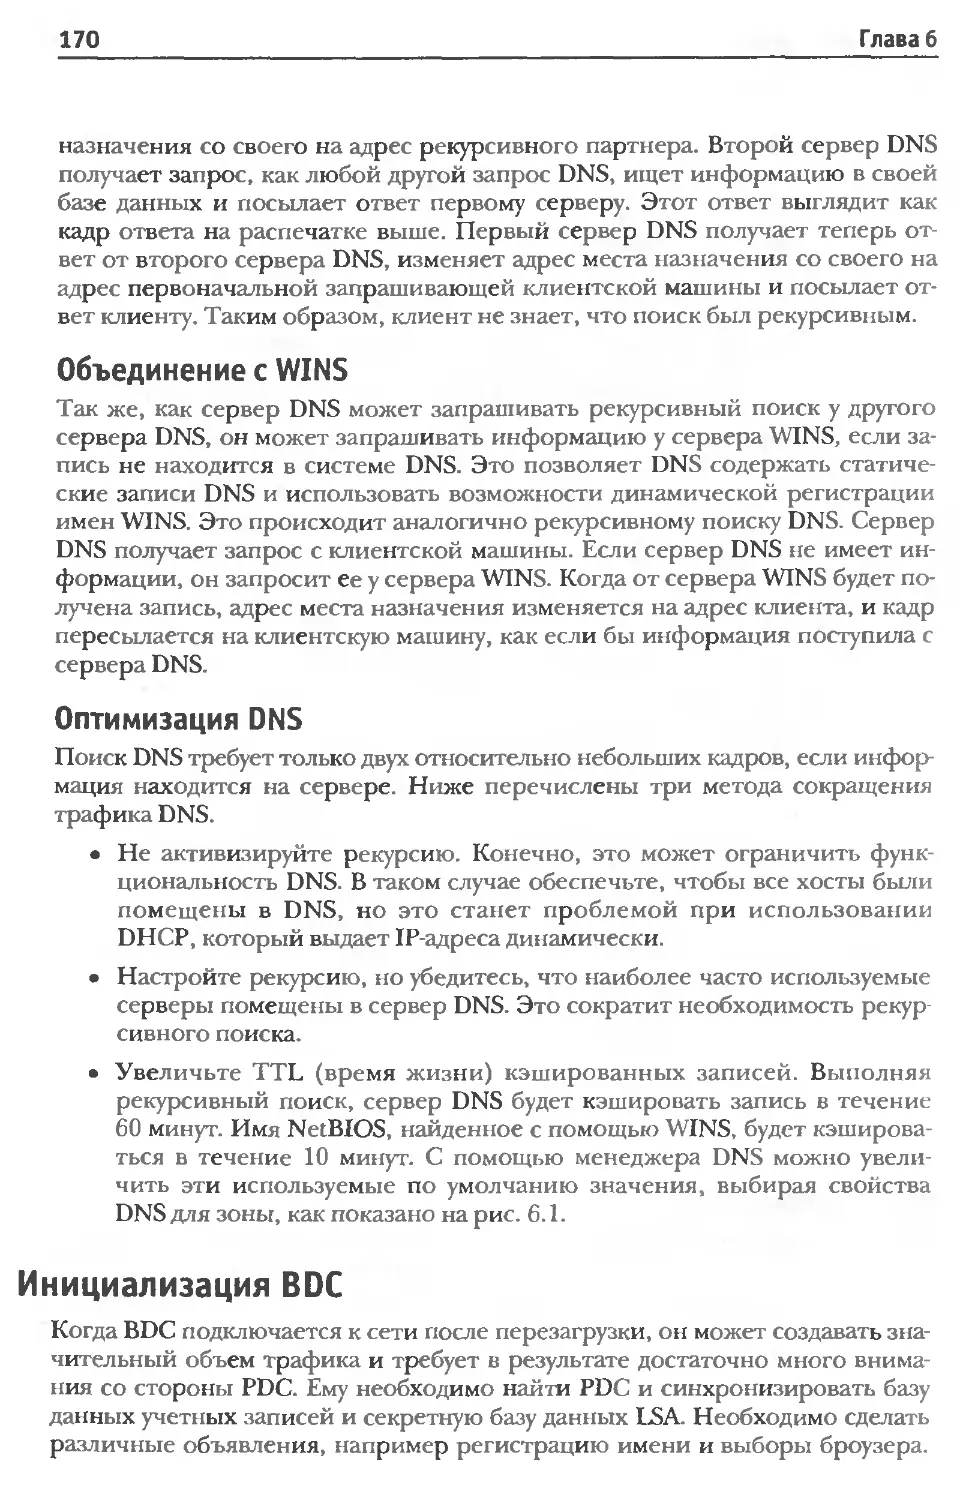 Объединение с WINS
Оптимизация DNS
Инициализация BDC